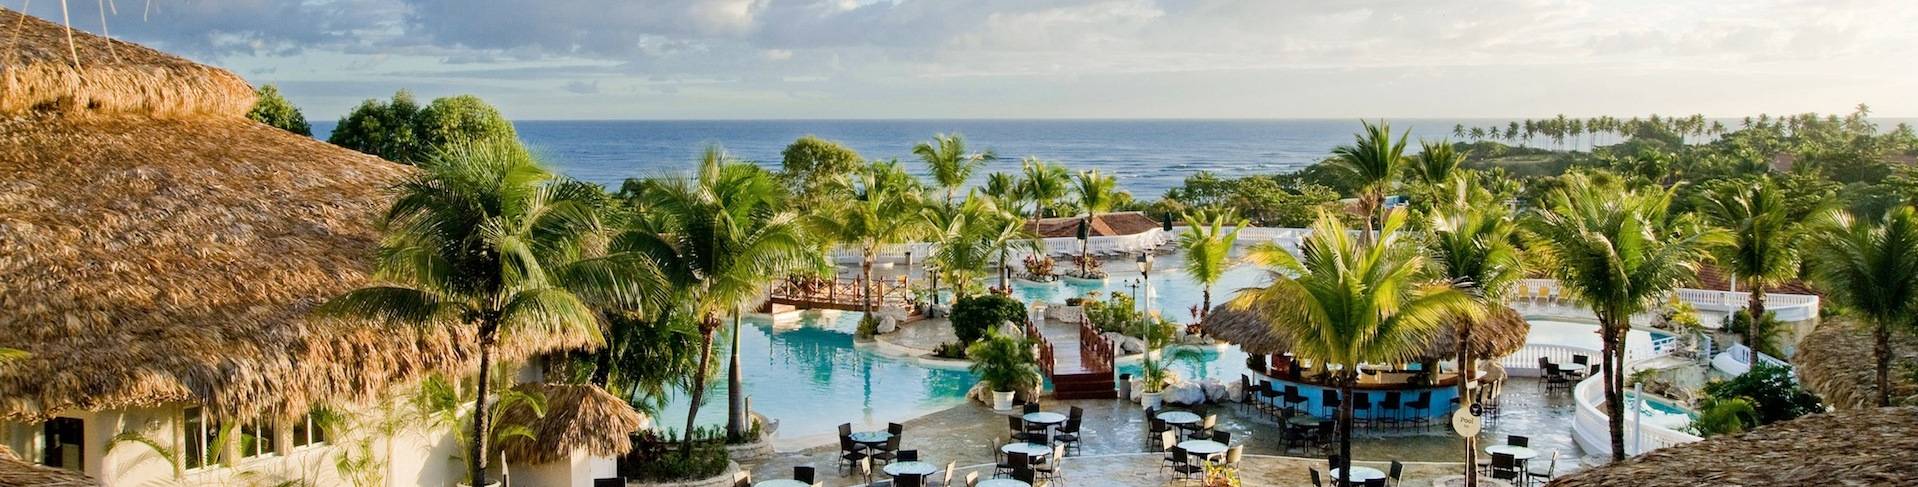 Пуэрто Плата - пляжный курорт в Доминикане